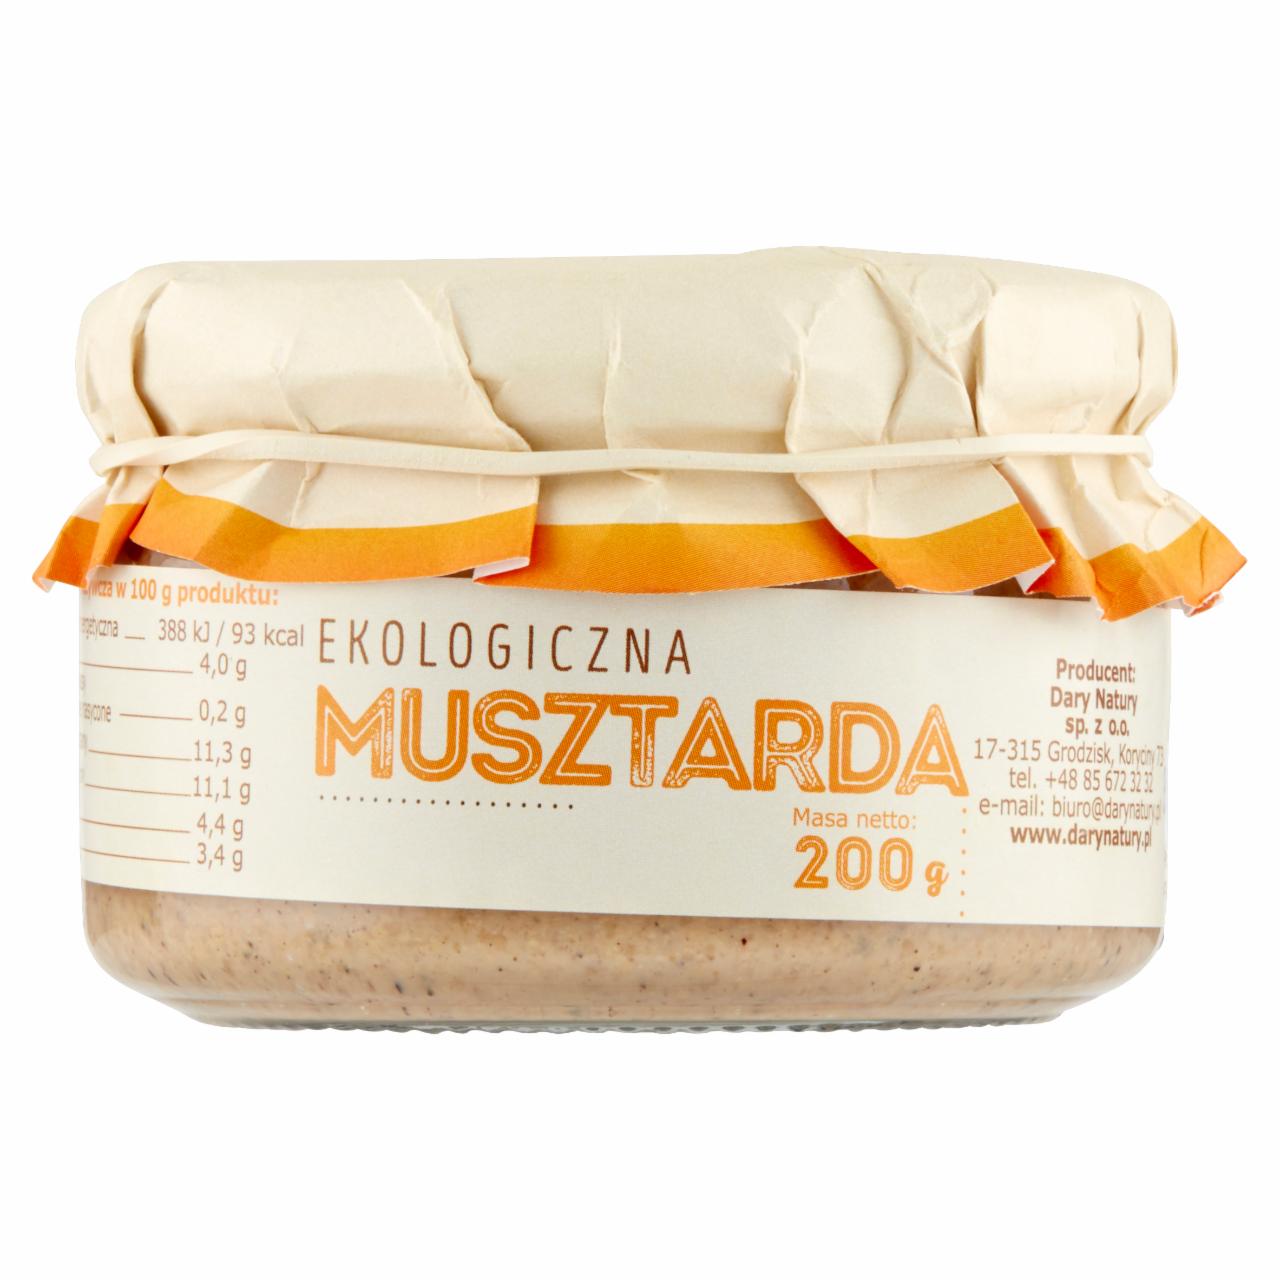 Photo - Dary Natury Organic Mustard 200 g